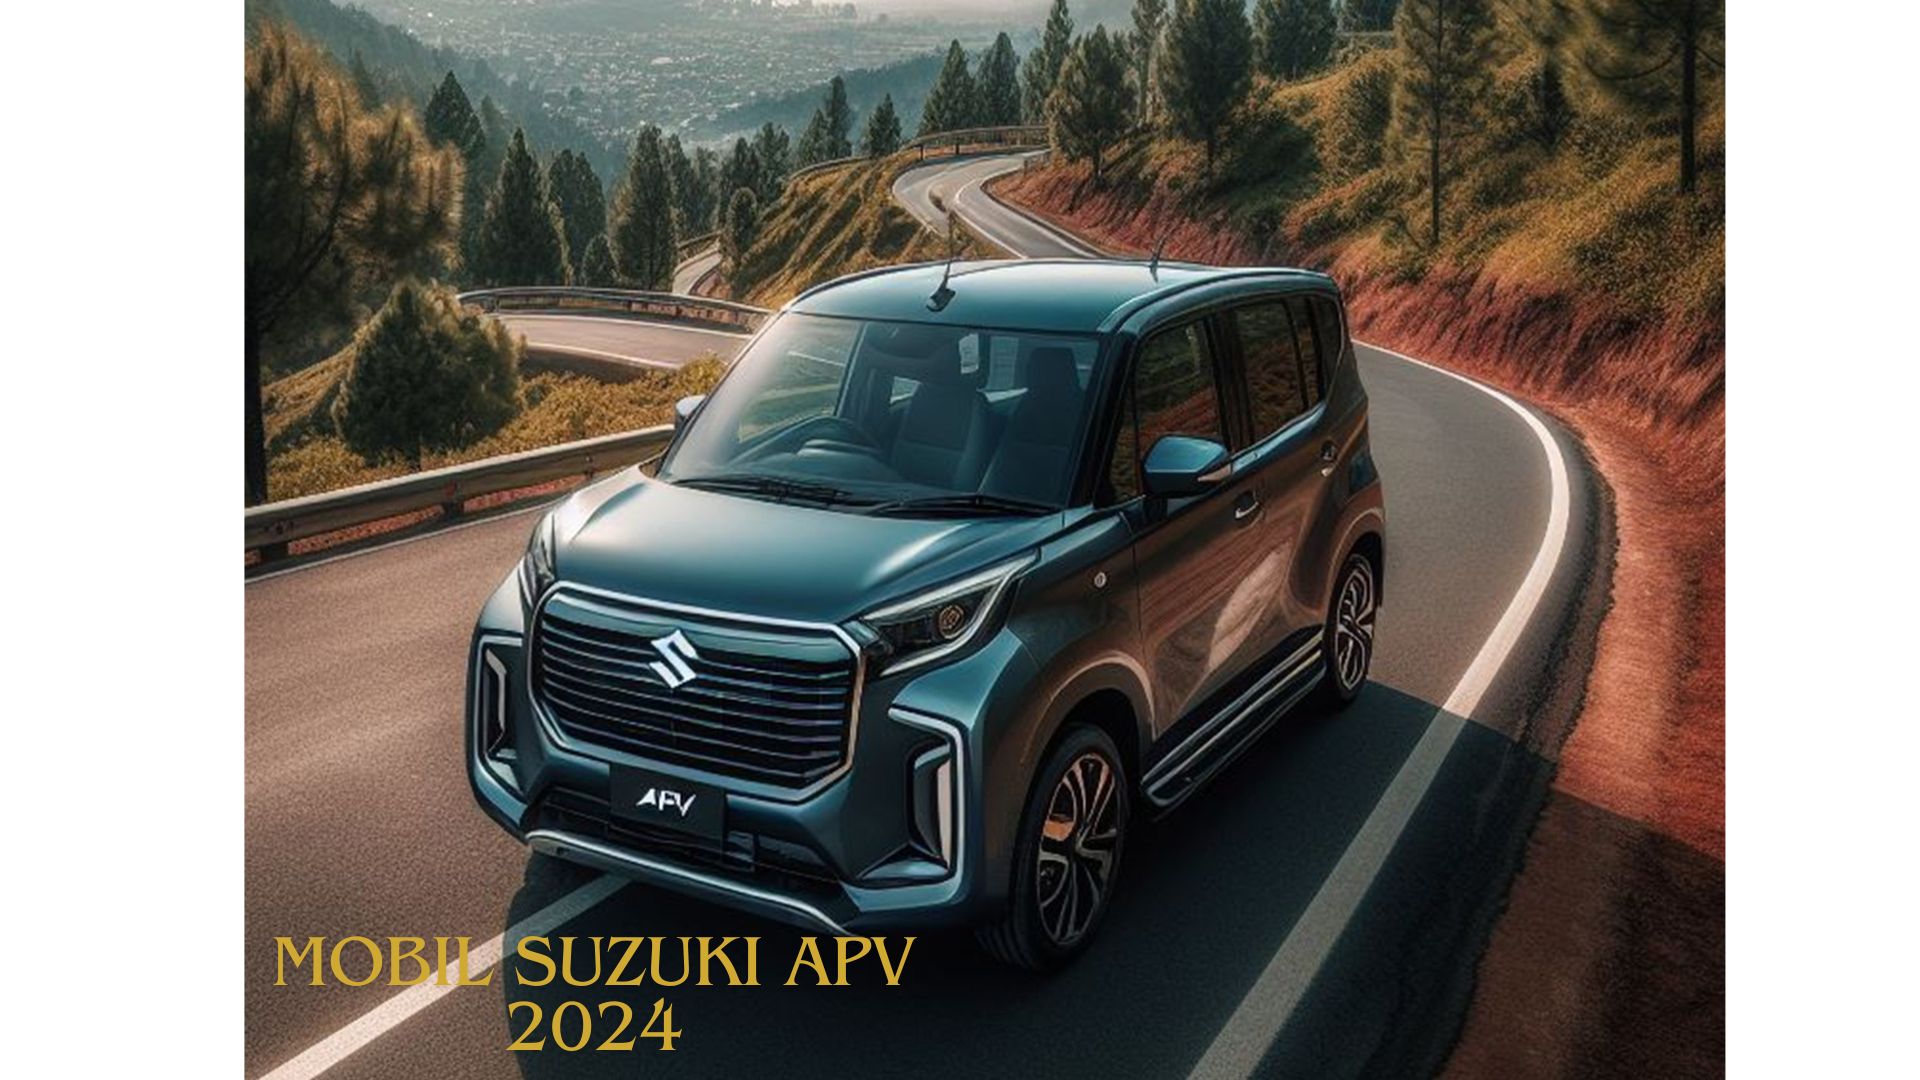 Mobil Suzuki APV 2024, Tampil Layaknya SUV Mewah dengan Desain Futuristik Siap Bikin Rame Jagat Raya